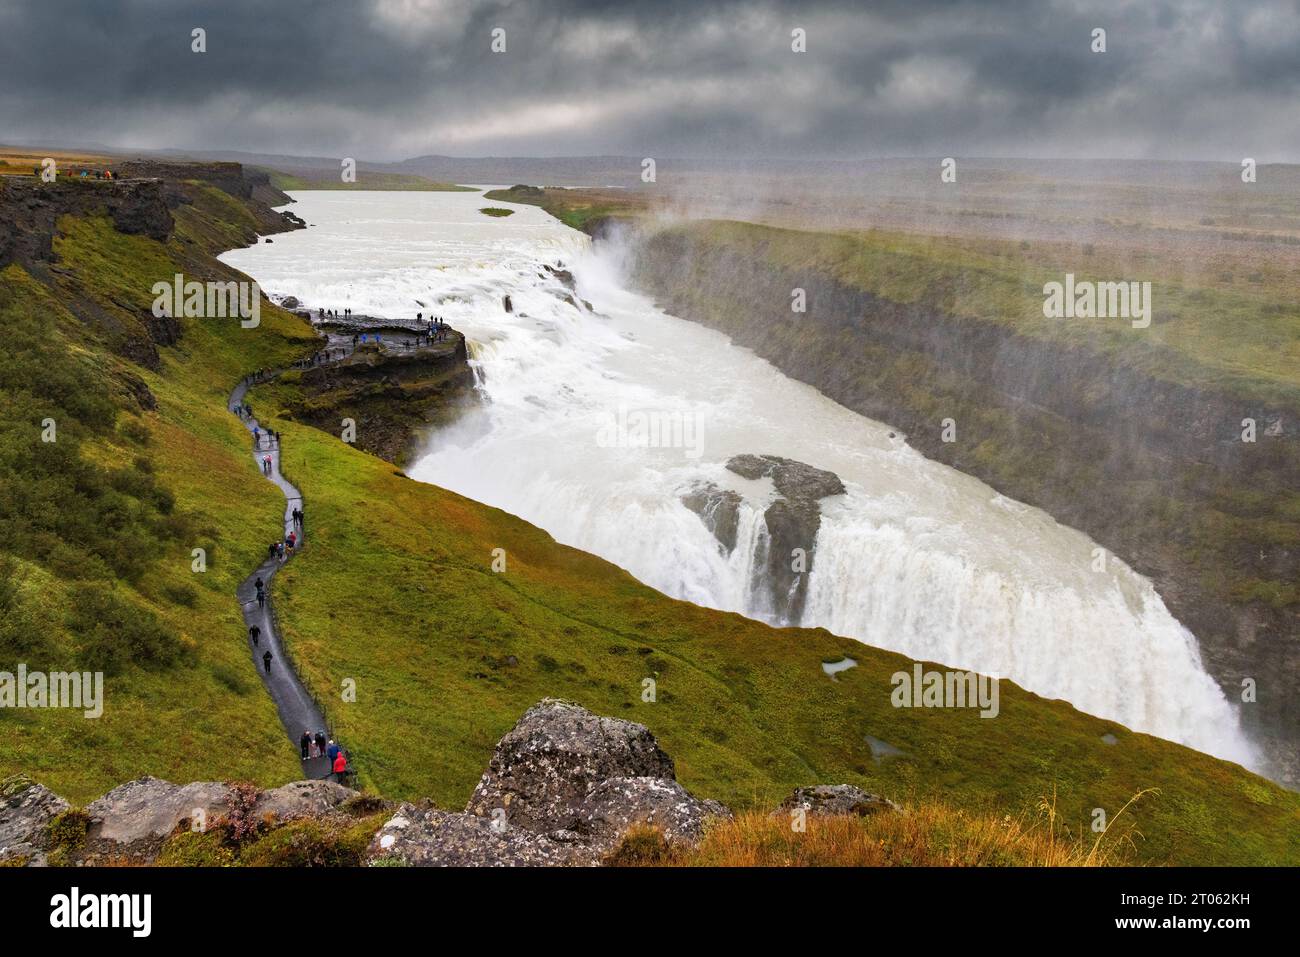 Gullfoss Waterfall Iceland, une grande chute d'eau célèbre sur le circuit du cercle d'Or, Reykjavik, Islande Europe. Voyage Islande. Banque D'Images